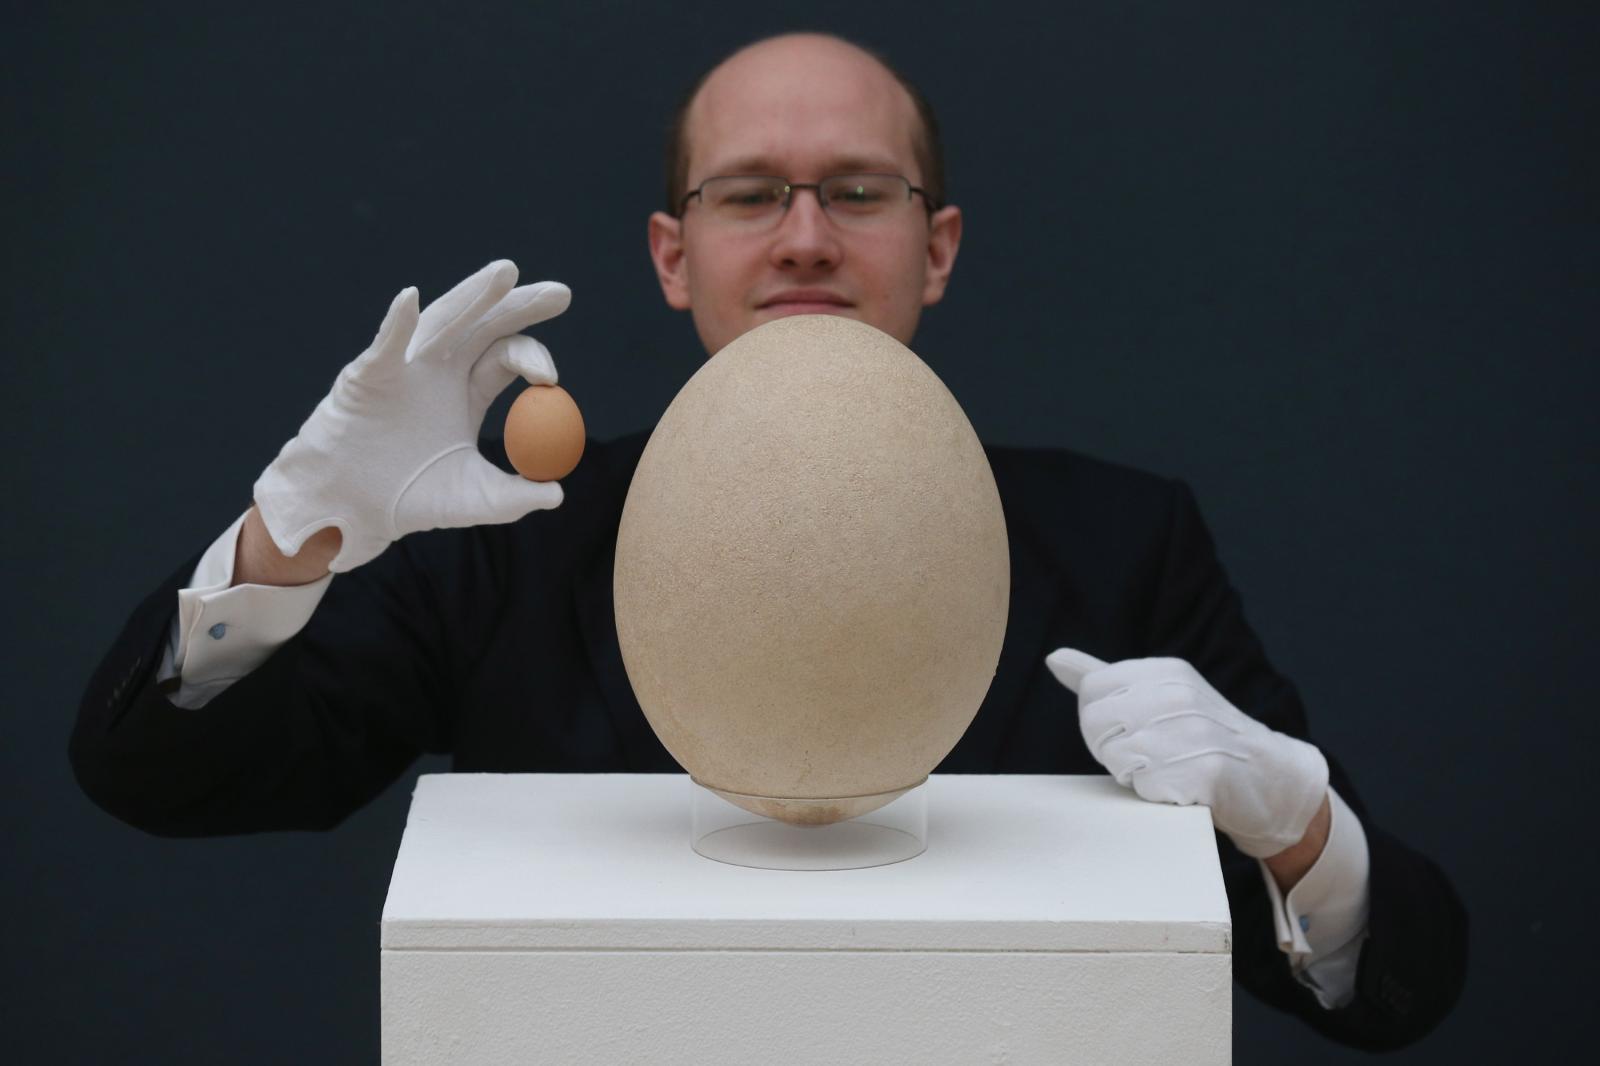 world's biggest egg